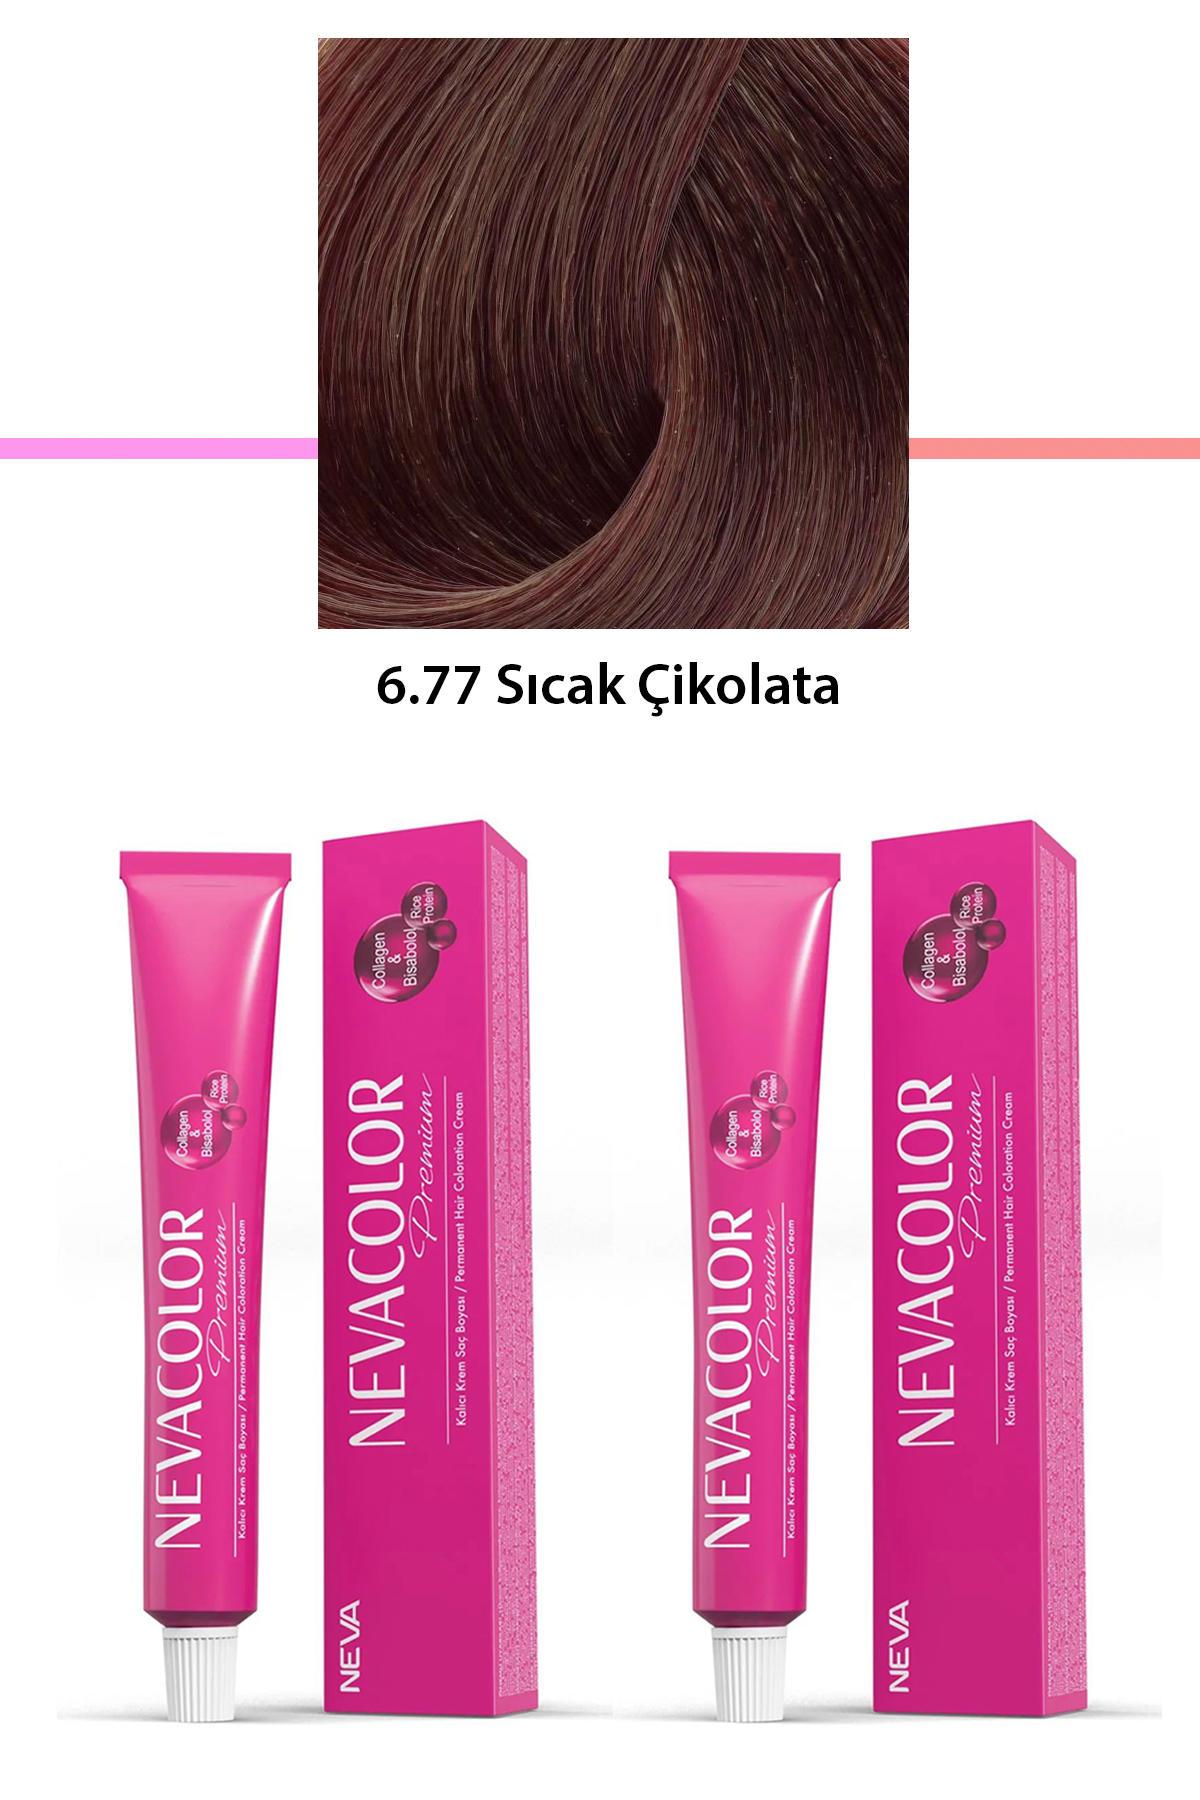 Nevacolor 6.77 Sıcak Çikolata Organik Krem Saç Boyası 50 gr